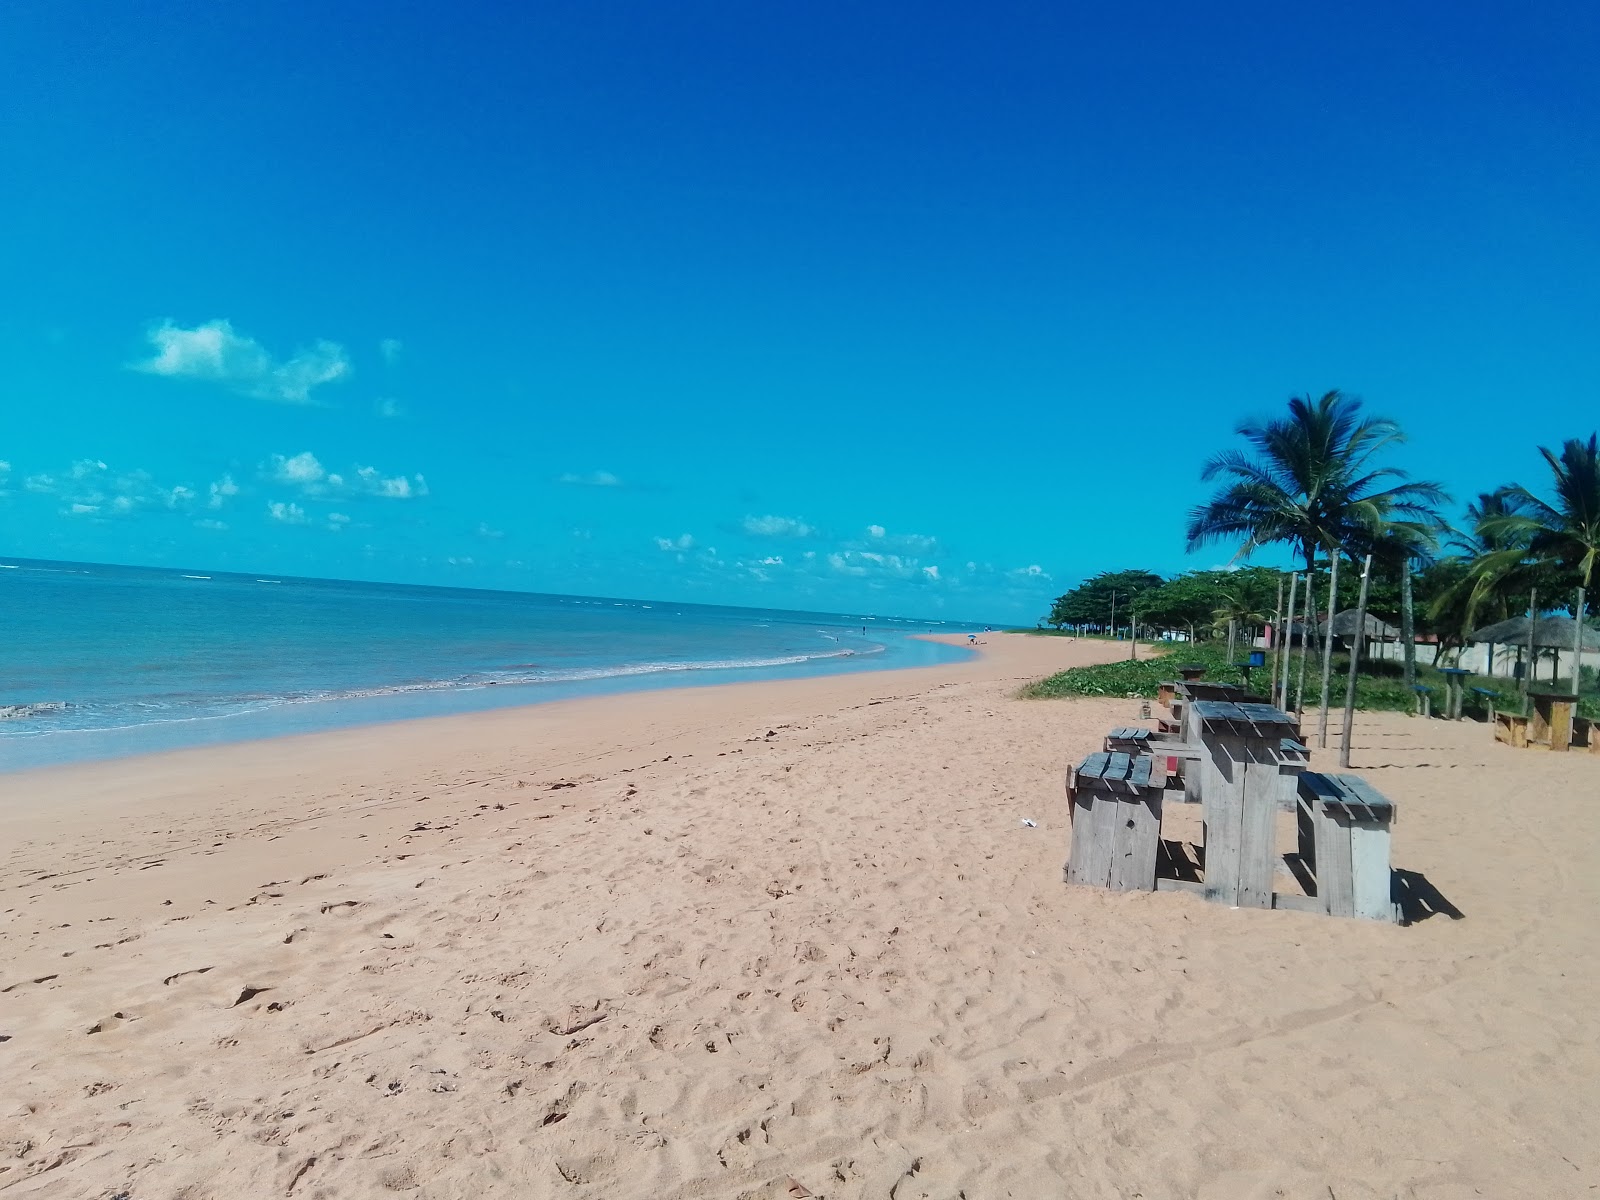 Foto av Jacaraipe stranden med lång rak strand